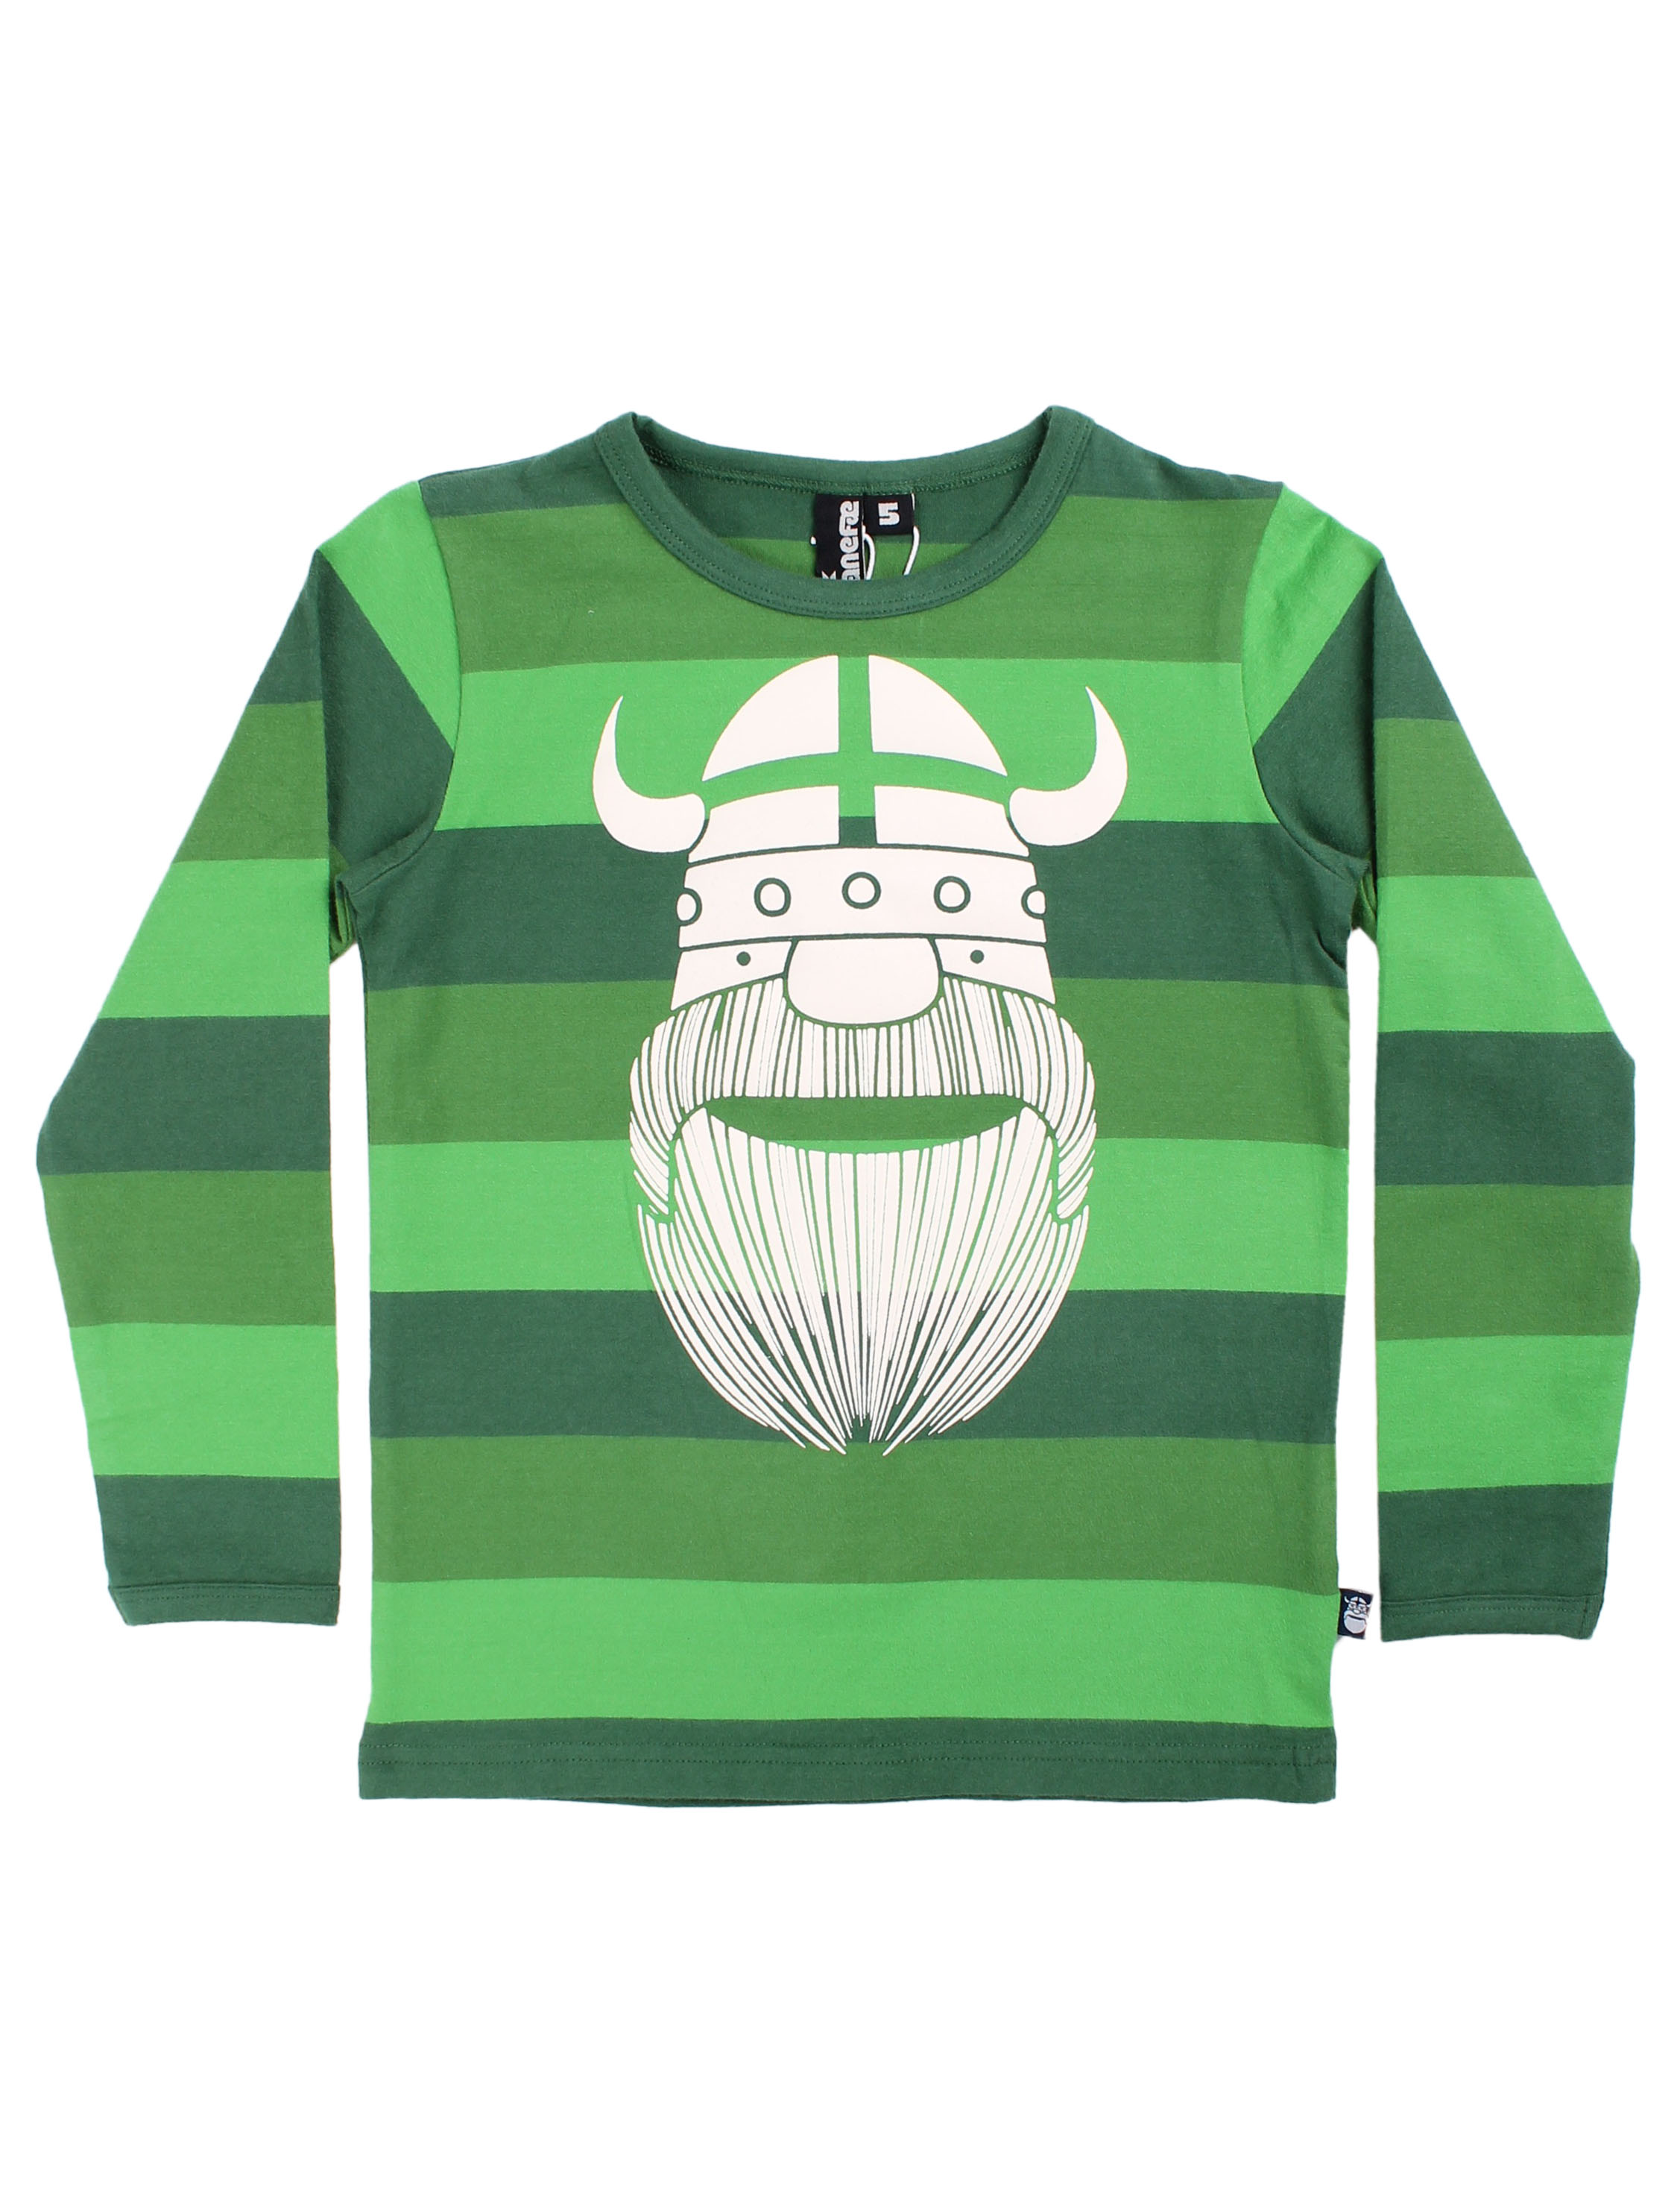 automatisk justere rack Danefæ - Grøn stribet shirt med Viking Erik - Mærker - IsaDisaKids